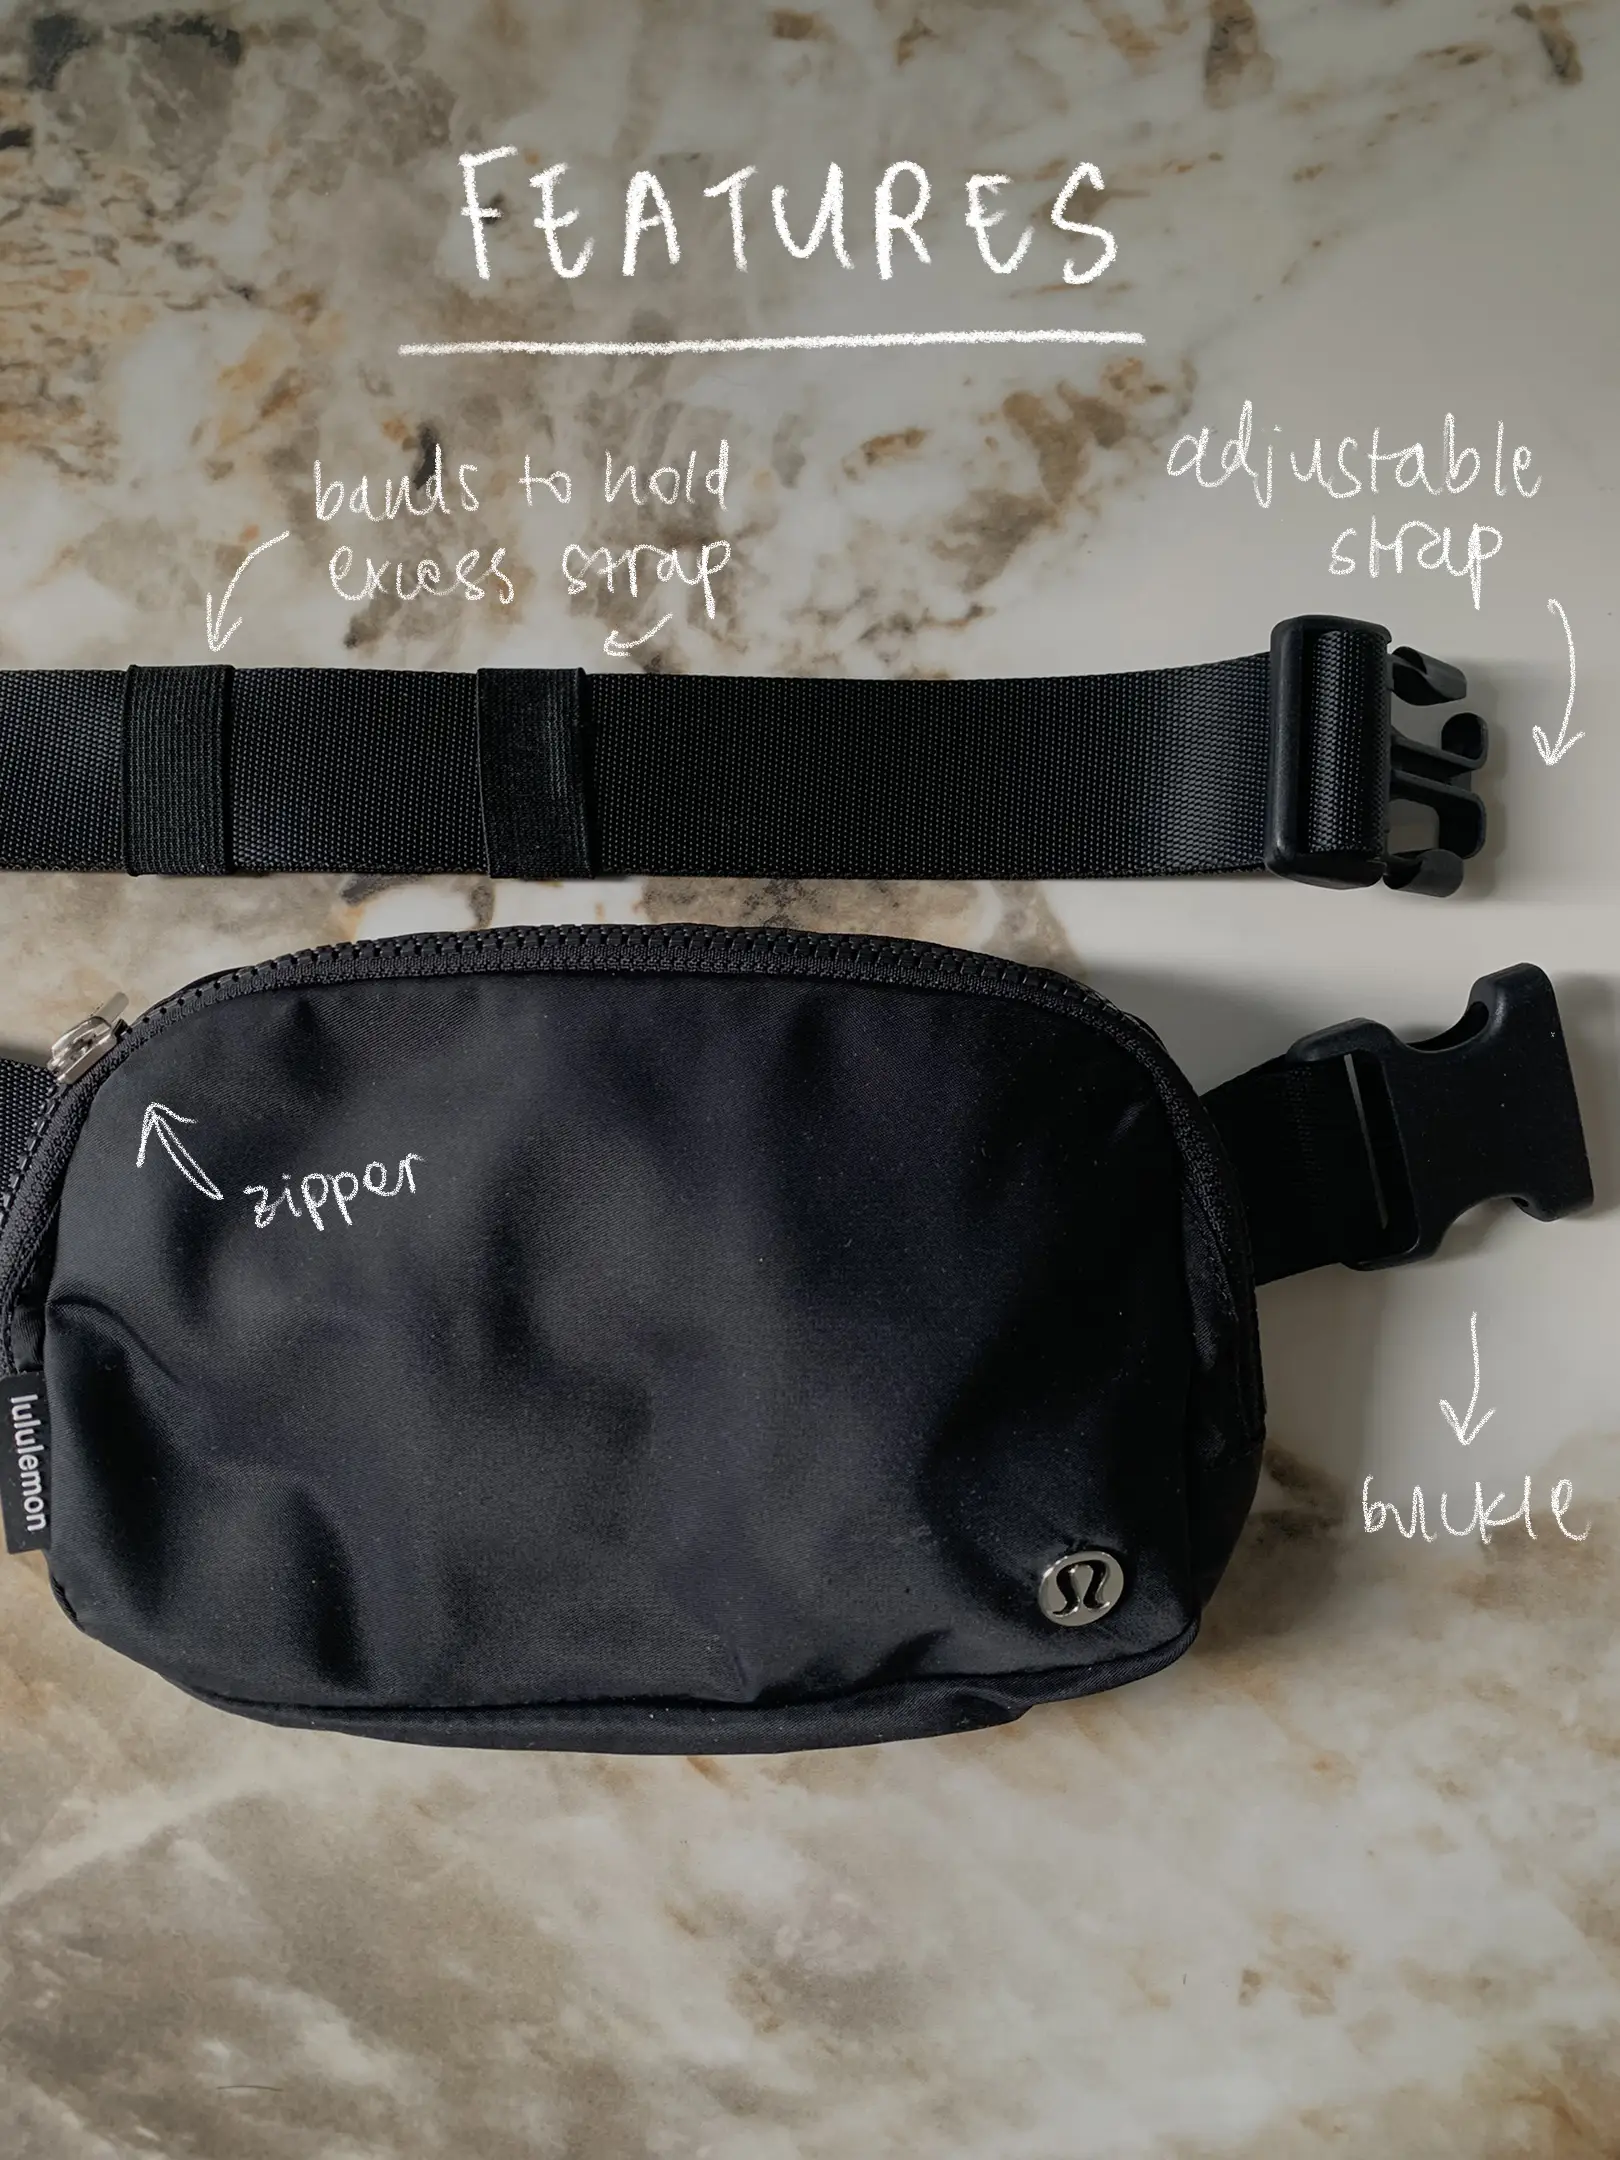 Why you should get the Lululemon Belt Bag